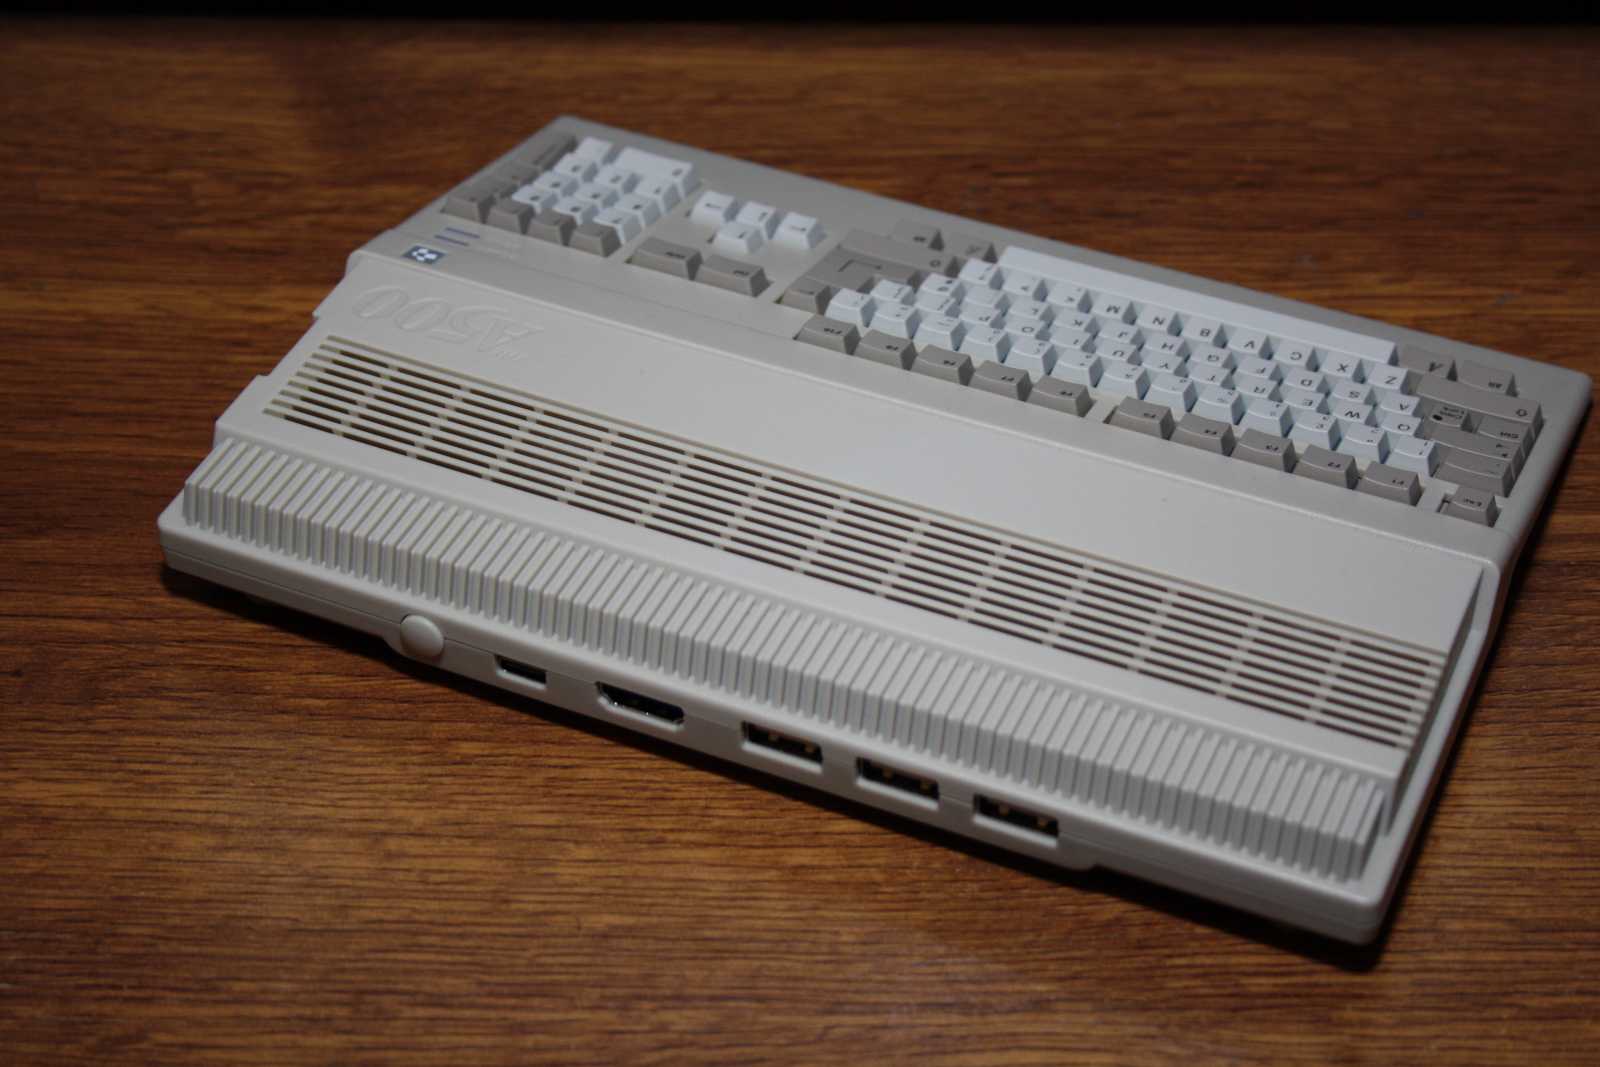 Amiga 500 mini: Roztomilá upomínka nejen pro pamětníky!